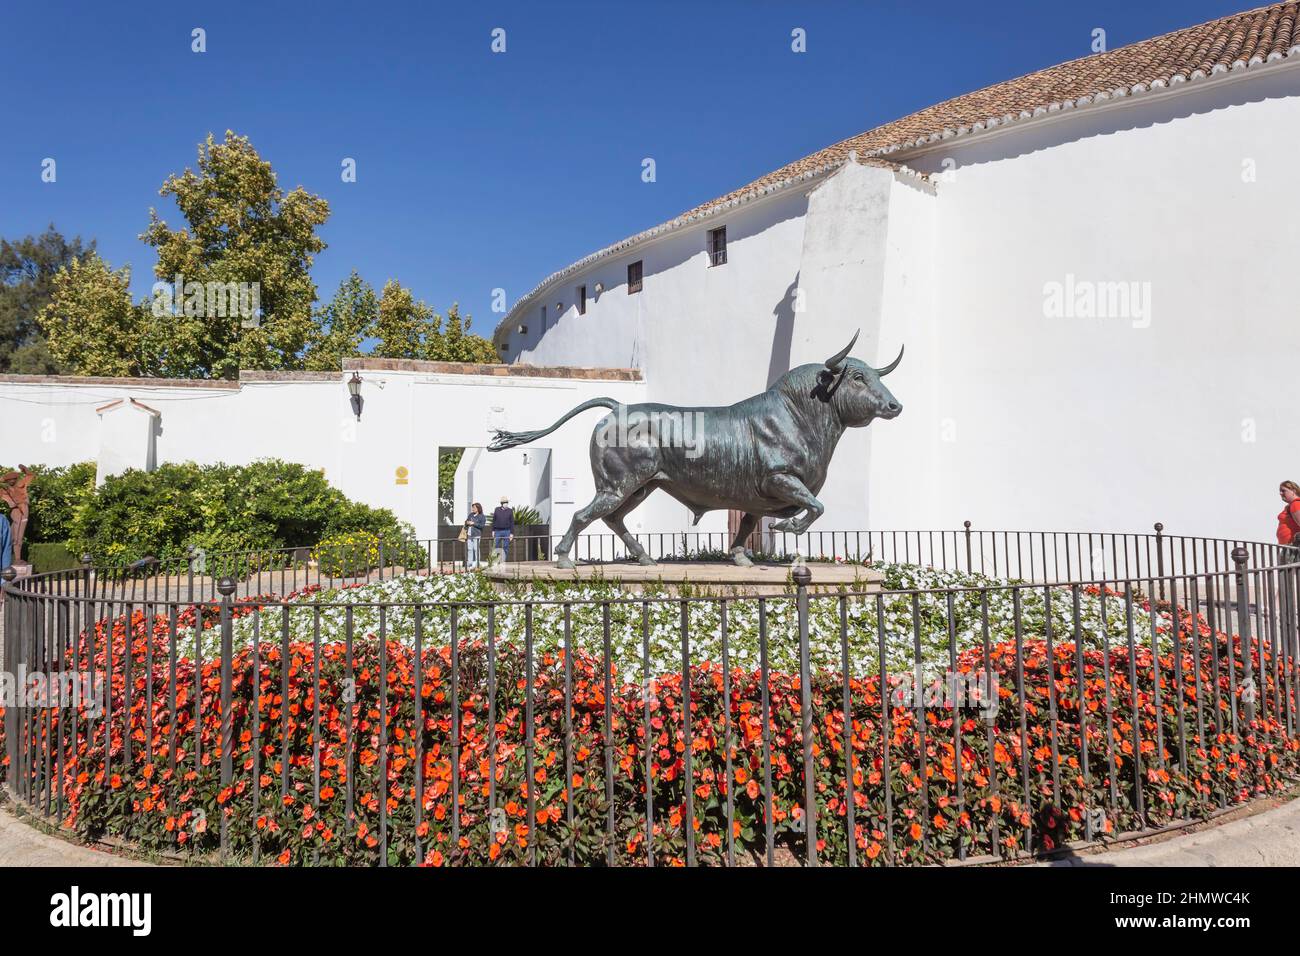 Ronda, Provinz Malaga, Spanien. Bronzestatue eines kämpfenden Stiers, modelliert von Nacho Martin. Stockfoto